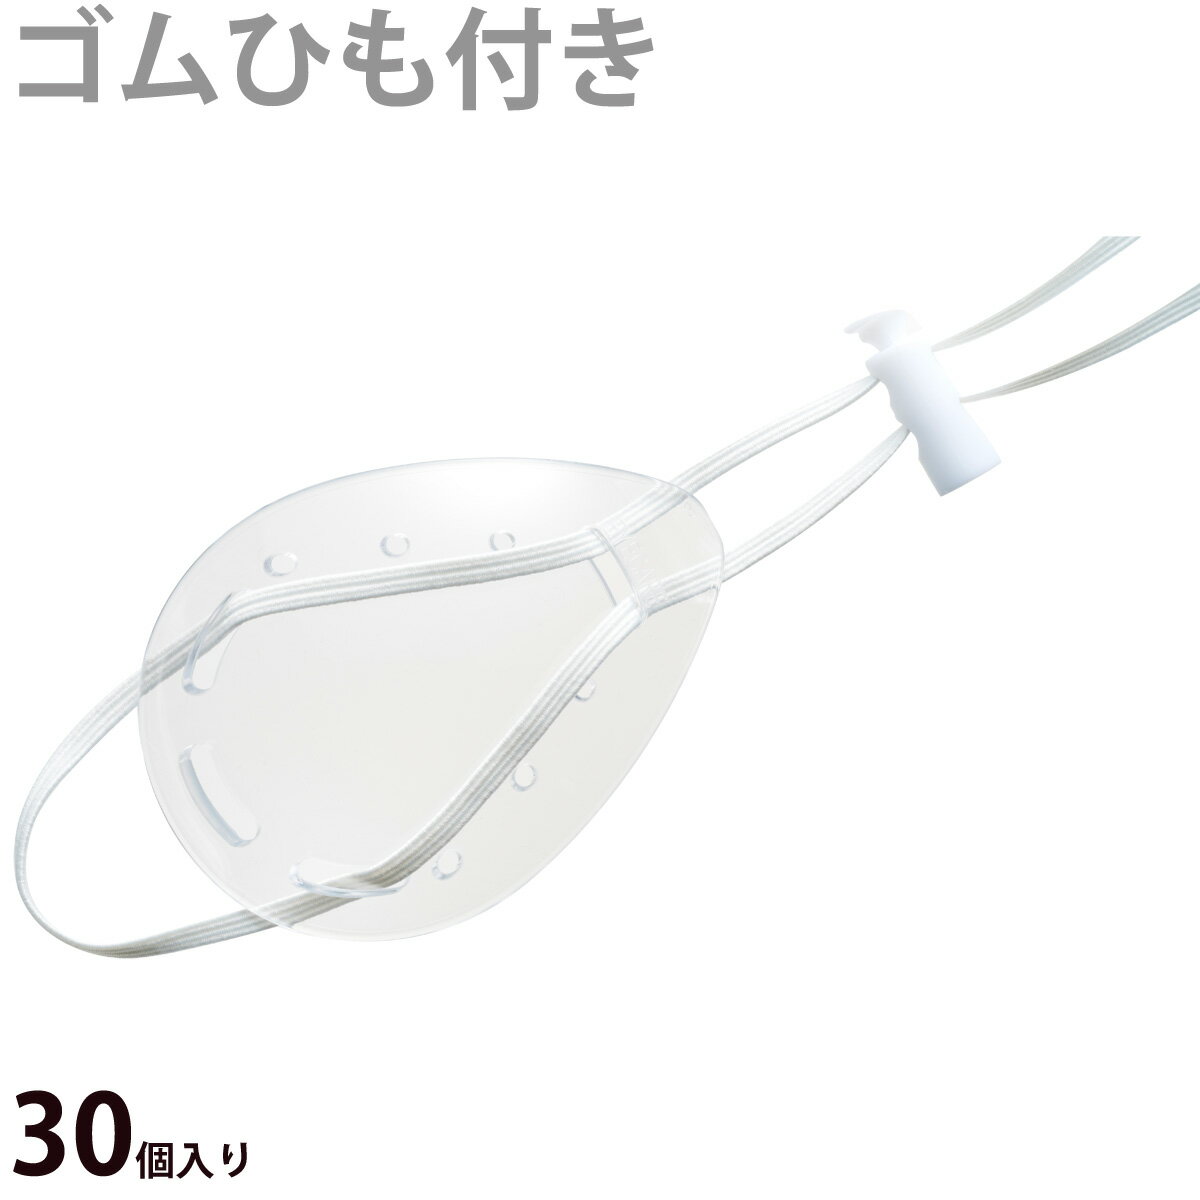 透明眼帯 ゴムひも付き[1箱30個入り] クリア 目立たない アイケア プラスチック おしゃれ シンプル 弱視 斜視 訓練 アイカバー 手術後 感染予防